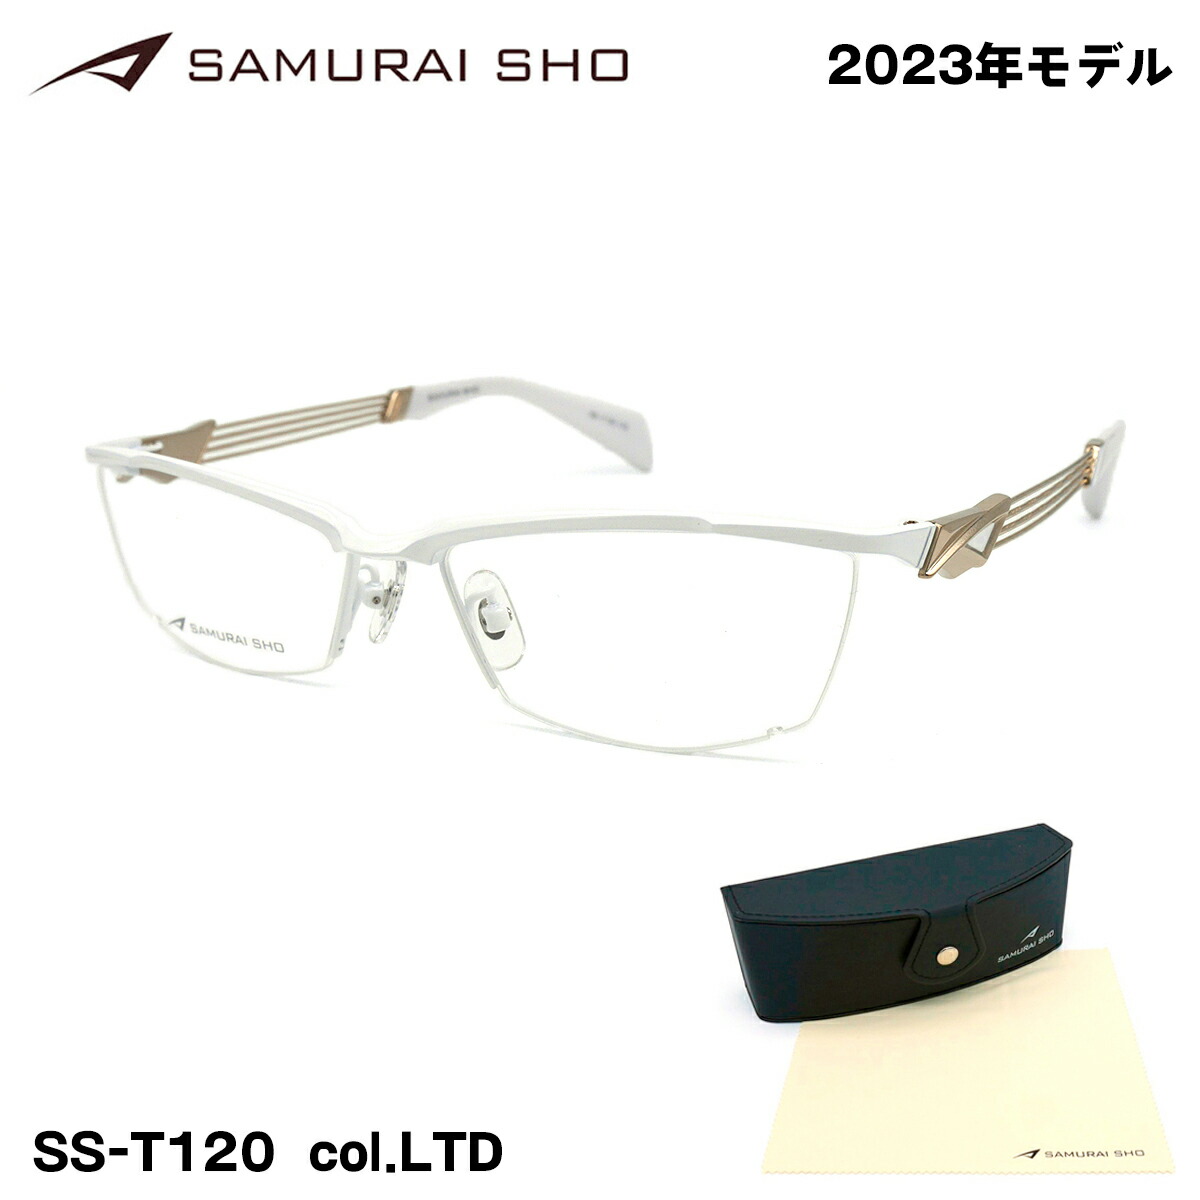 SAMURAI SHO サムライショウ メガネ SS-T120 col.LTD 57mm リミテッド